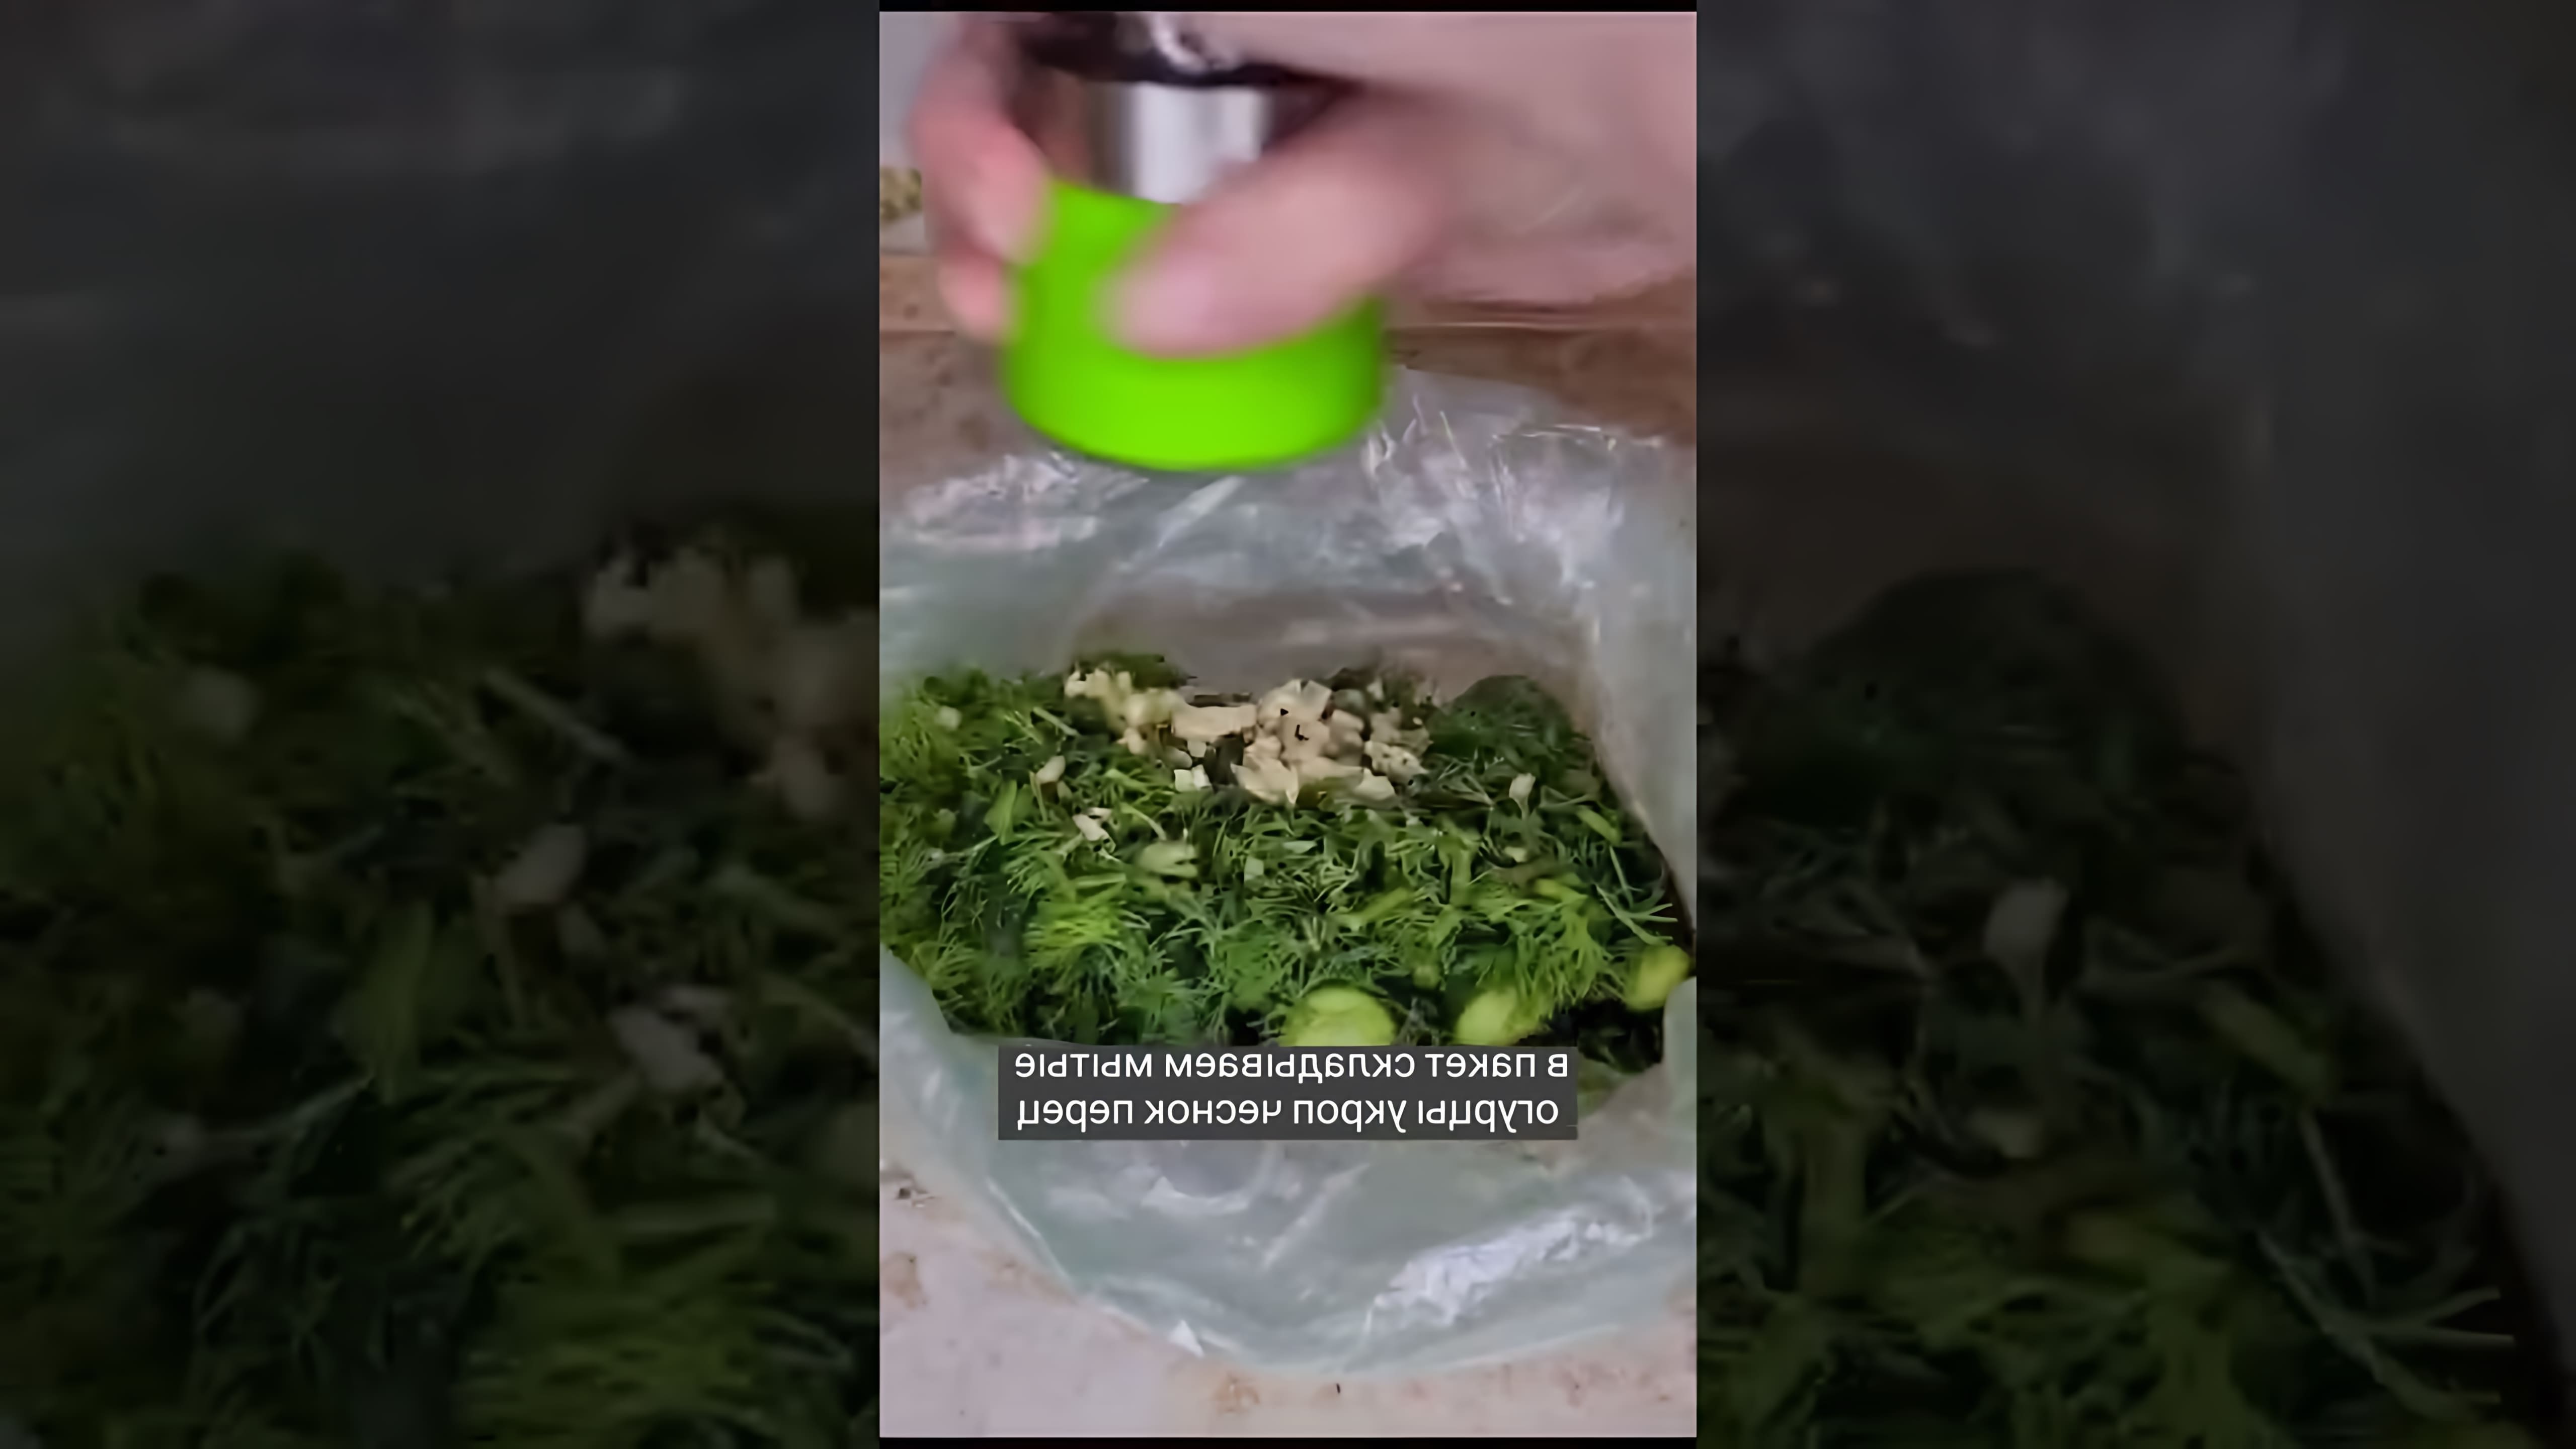 МАЛОСОЛЬНЫЕ ОГУРЦЫ В ПАКЕТЕ

В этом видео-ролике я покажу, как приготовить вкусные и ароматные малосольные огурцы в пакете